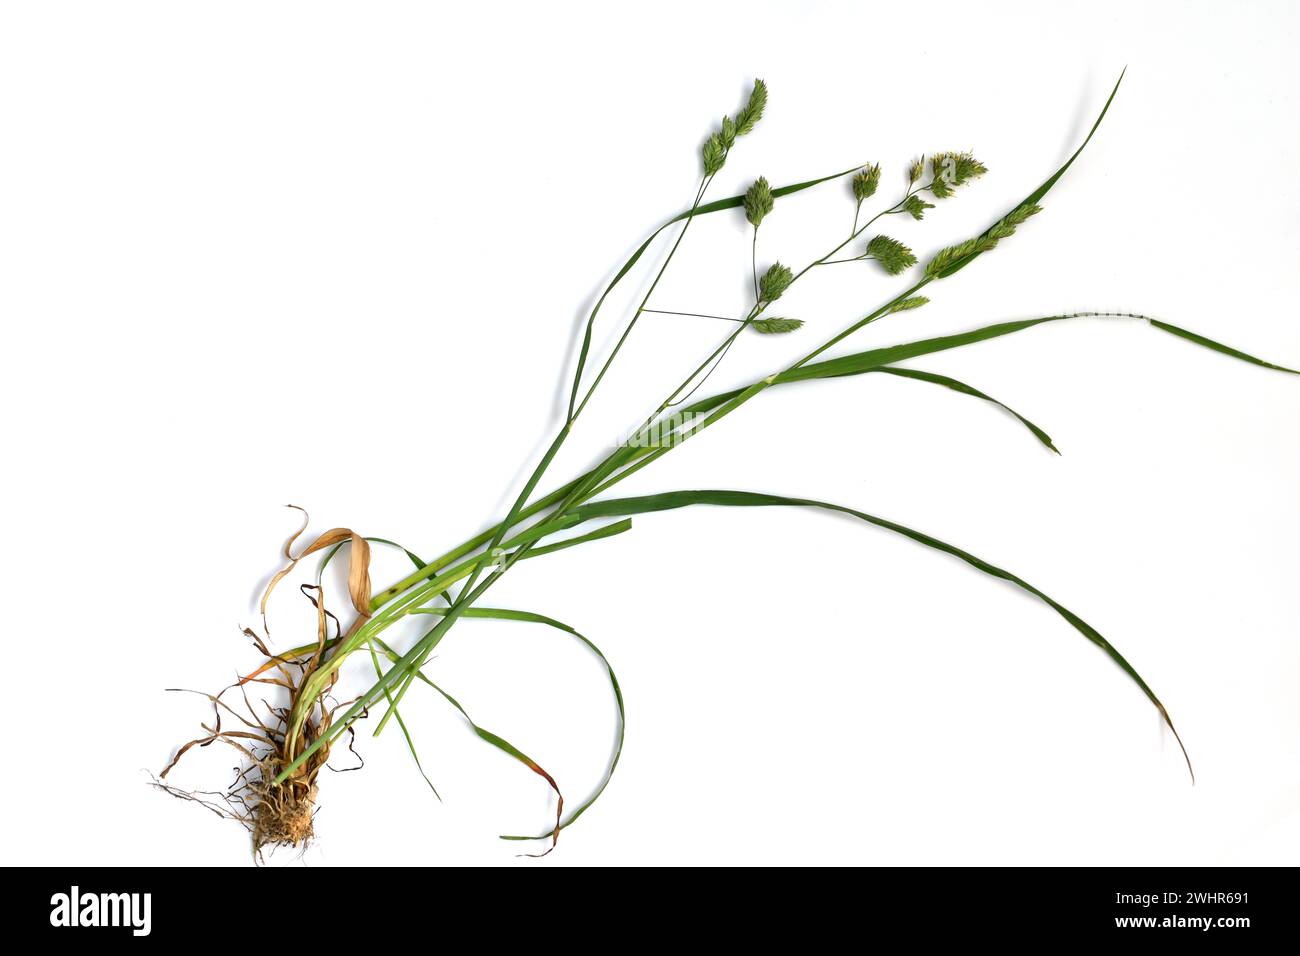 L'image montre un tutoriel pour étudier l'herbe de bluegrass, montrant ses tiges, ses feuilles et ses fleurs. Banque D'Images